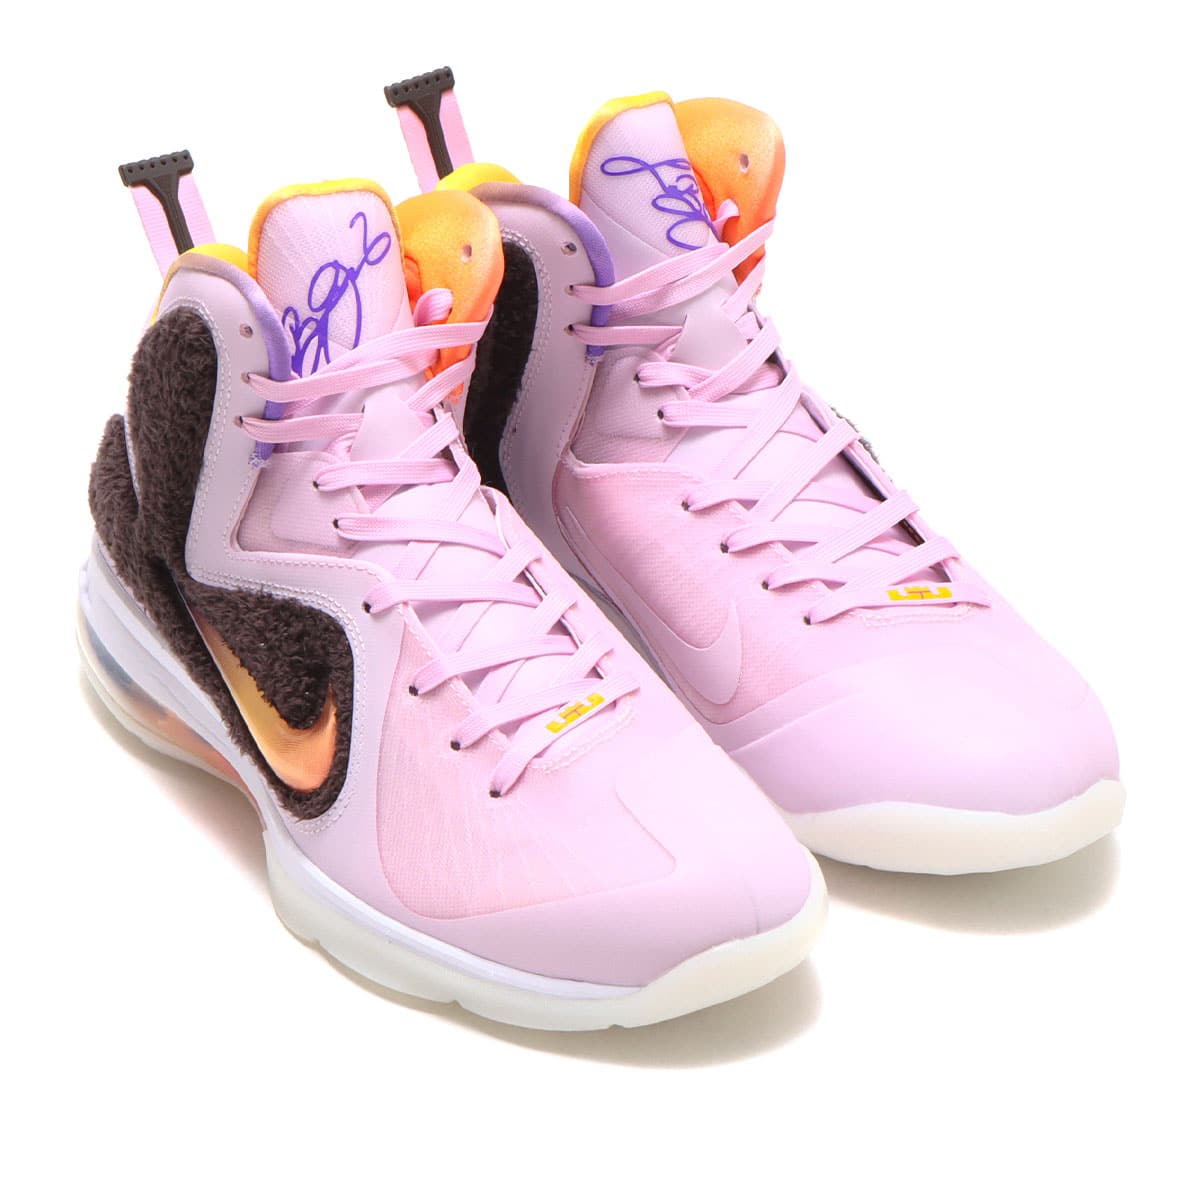 Nike LeBron 9 "Regal Pink"